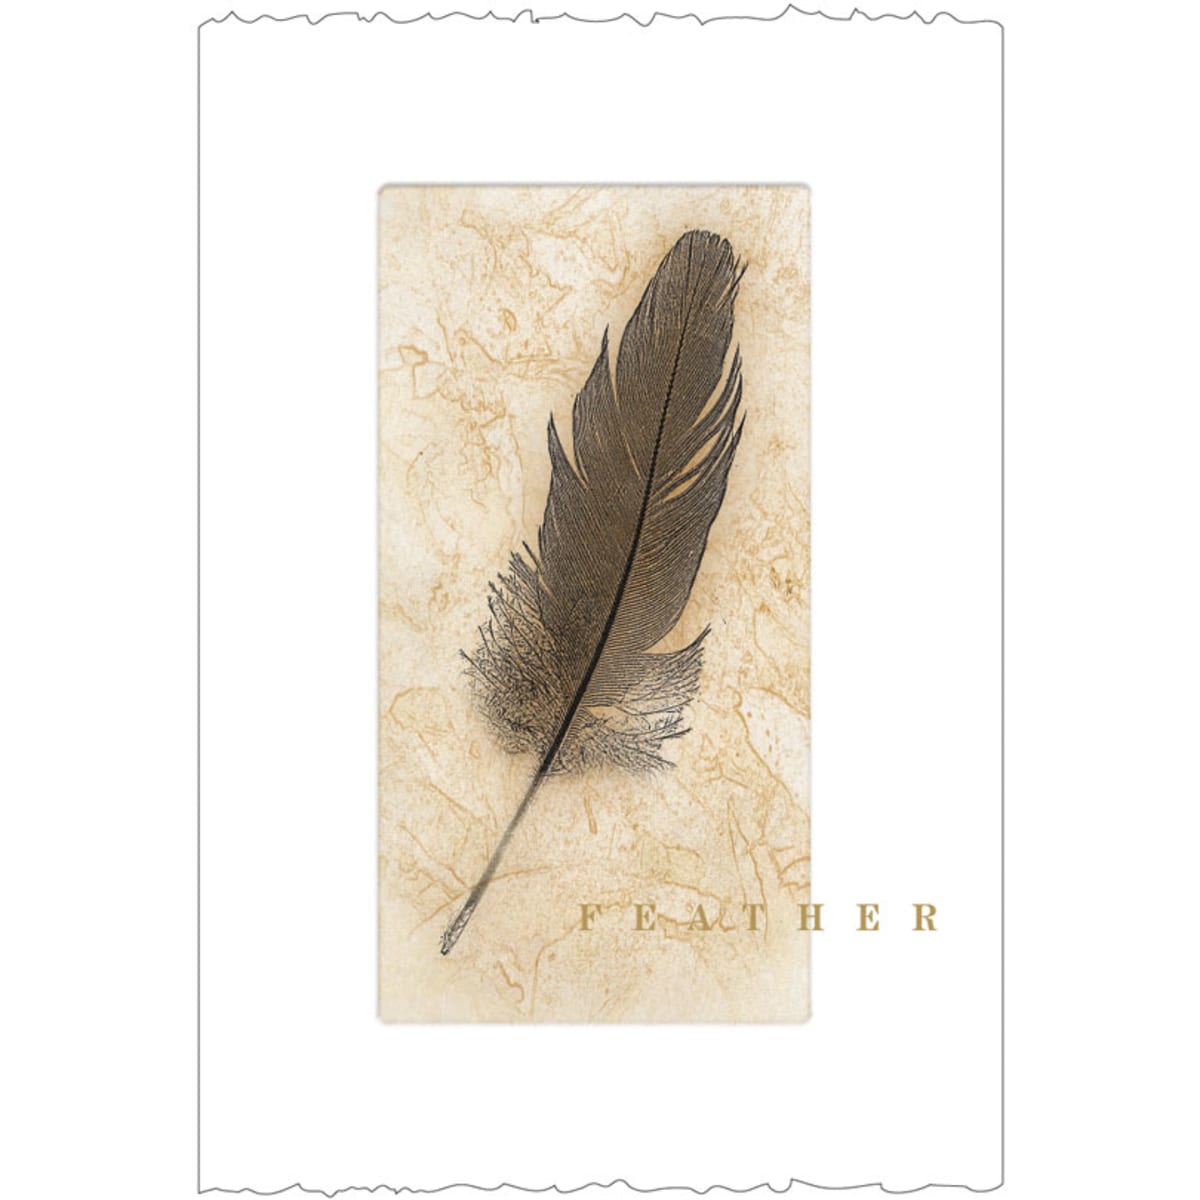 Feather Cabernet Sauvignon 2011 Front Label